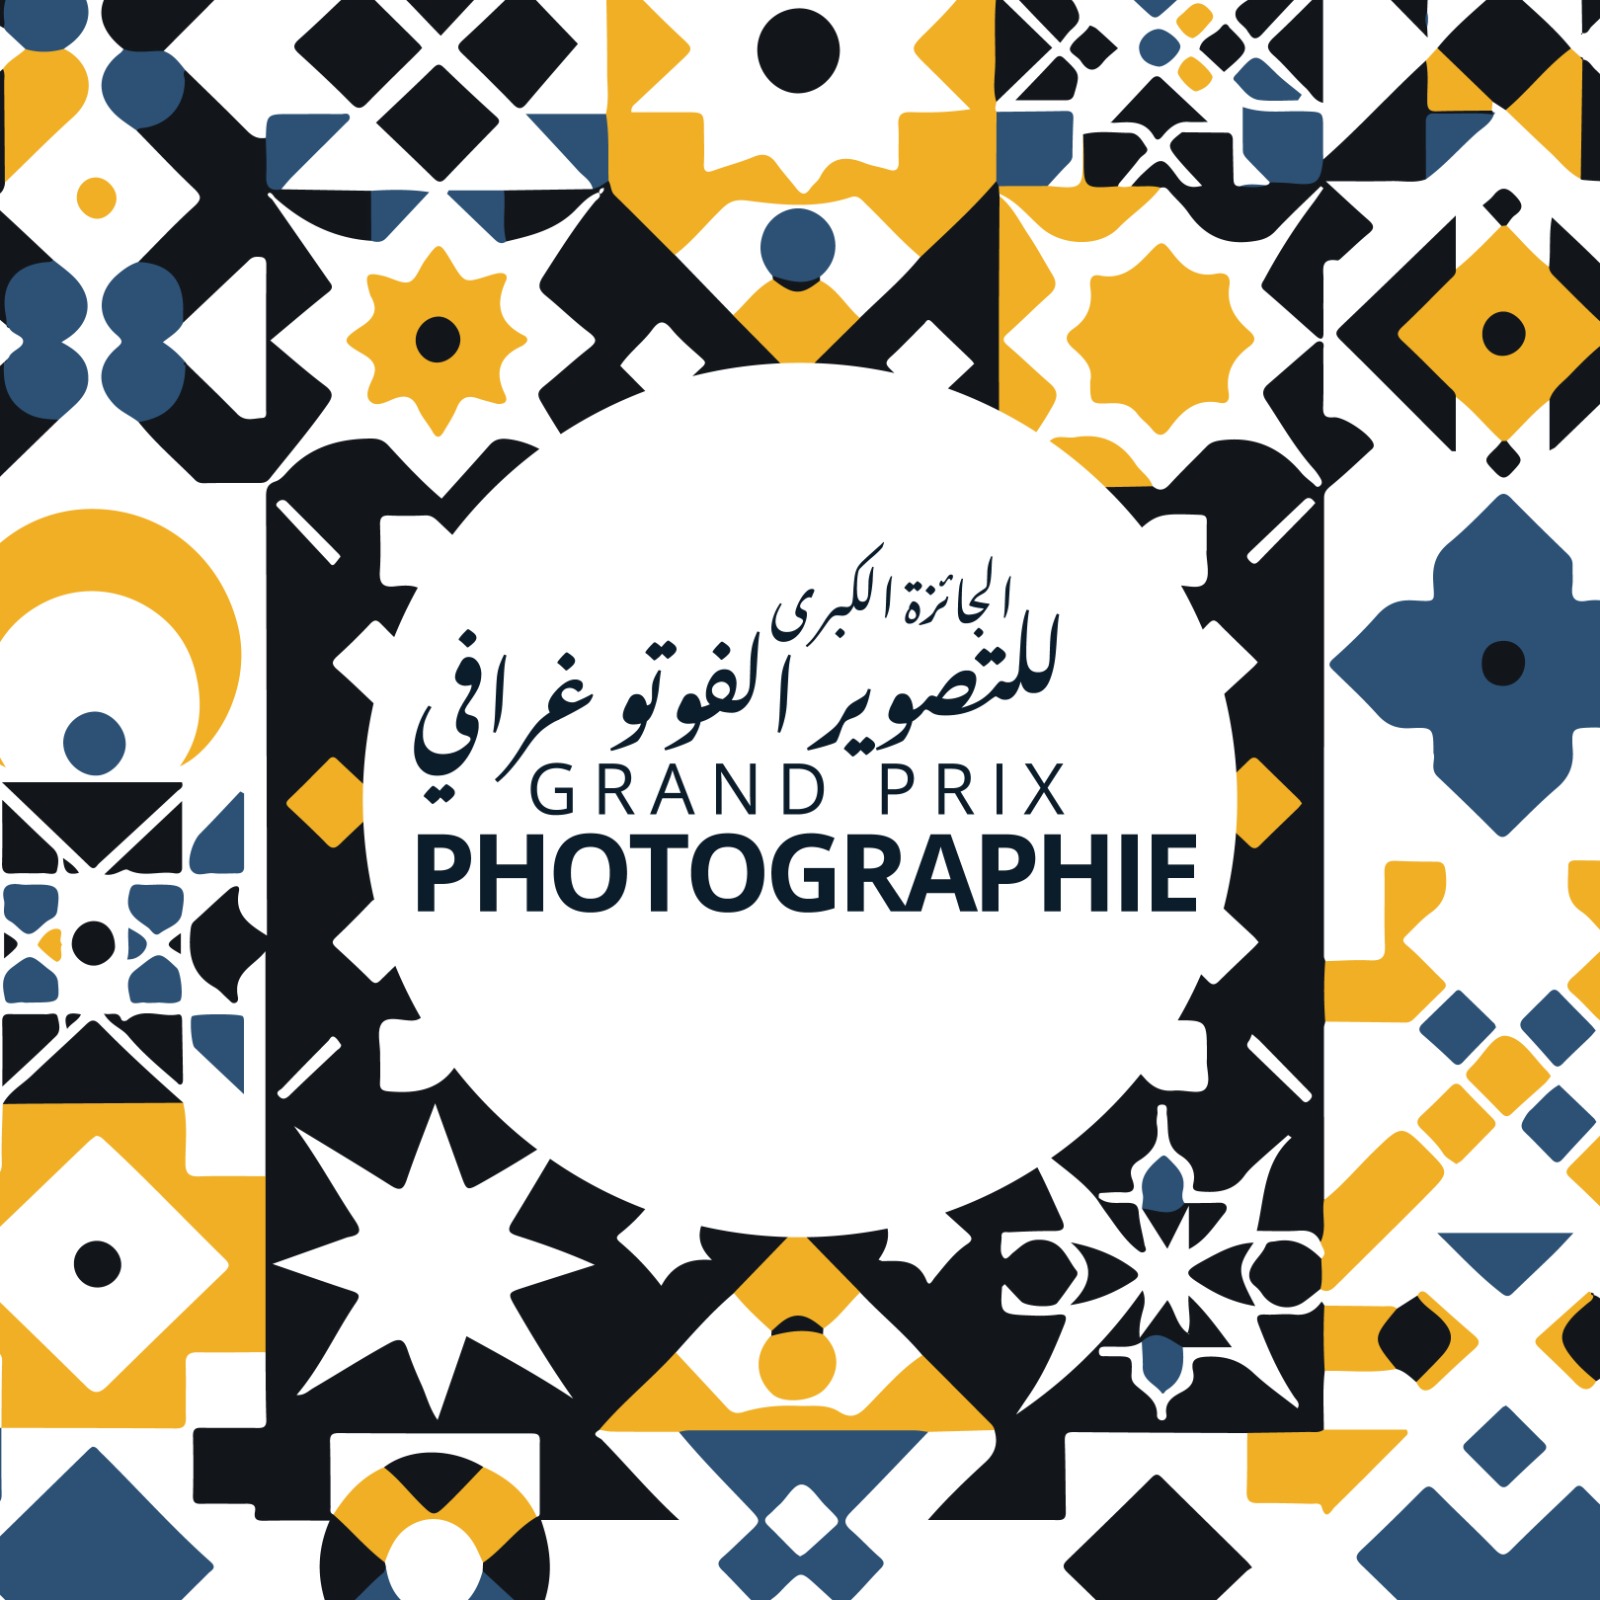 Lancement du Grand Prix de Photographie sous le thème "Maroc, patrimoine vivant"